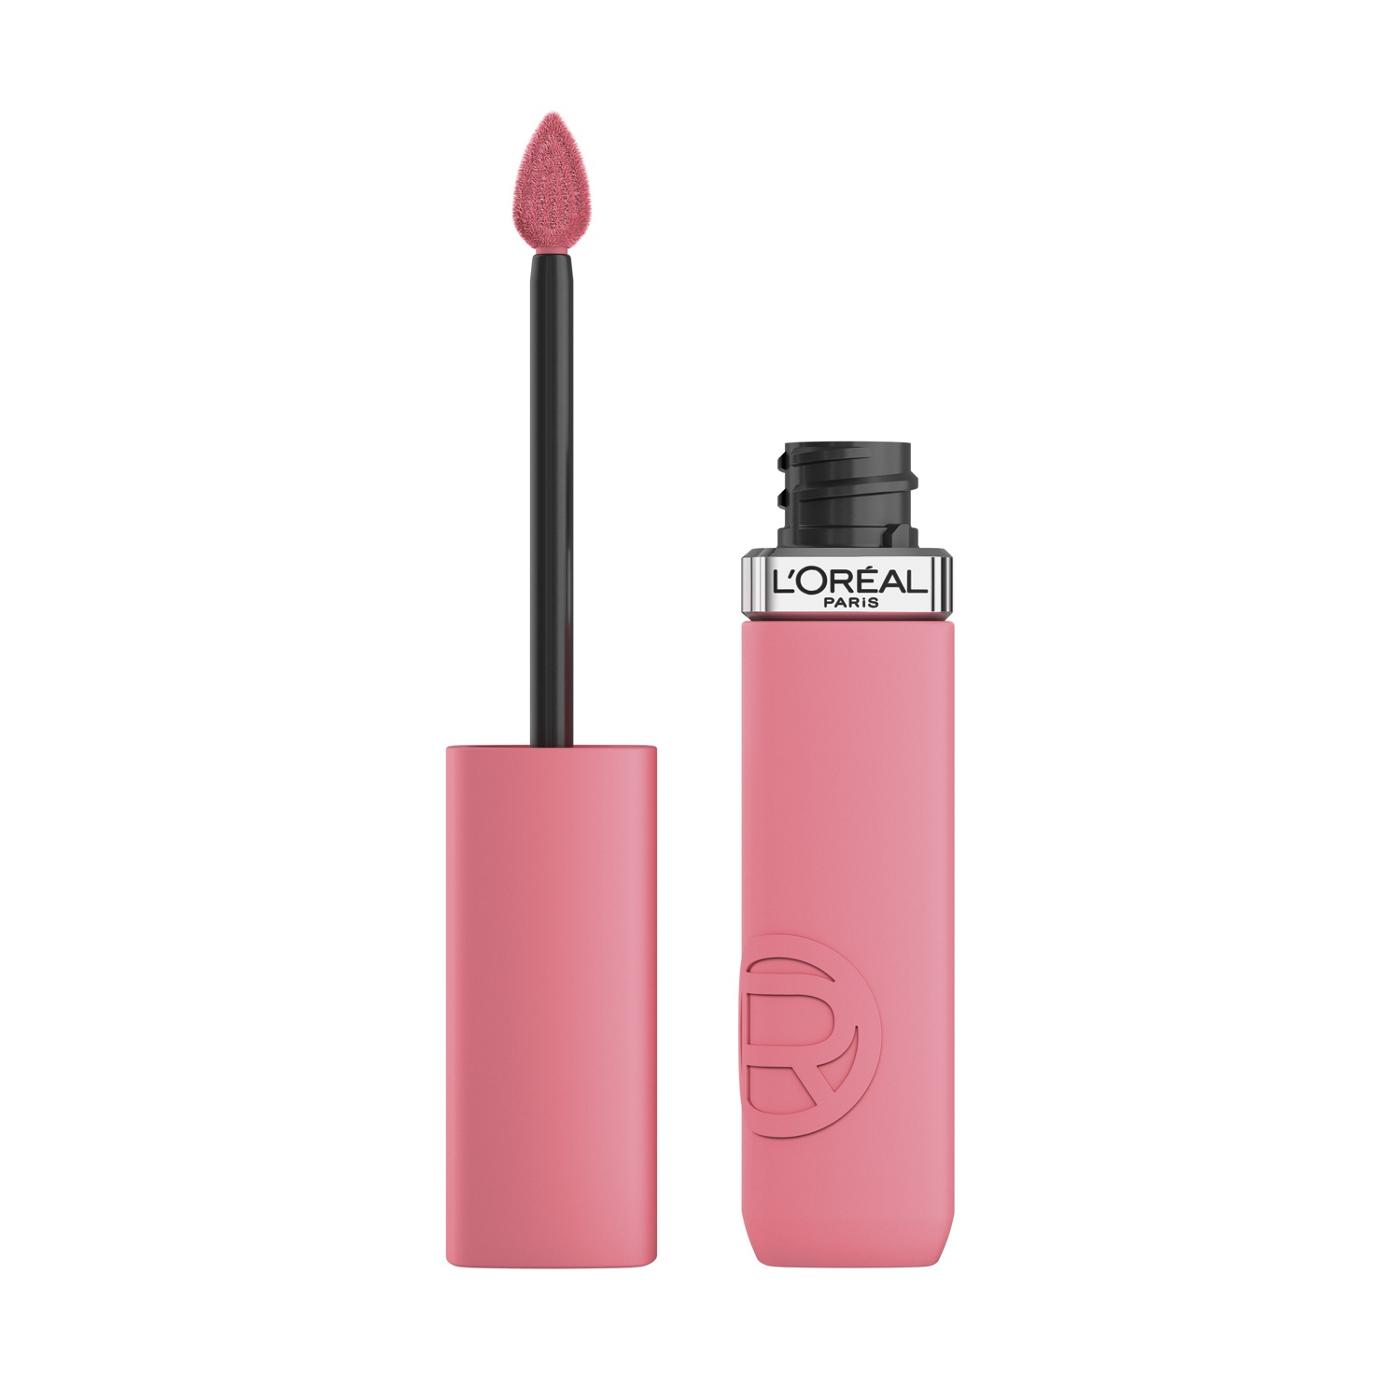 L'Oréal Paris Infallible Le Matte Resistance Liquid Lipstick - Proposal; image 1 of 6